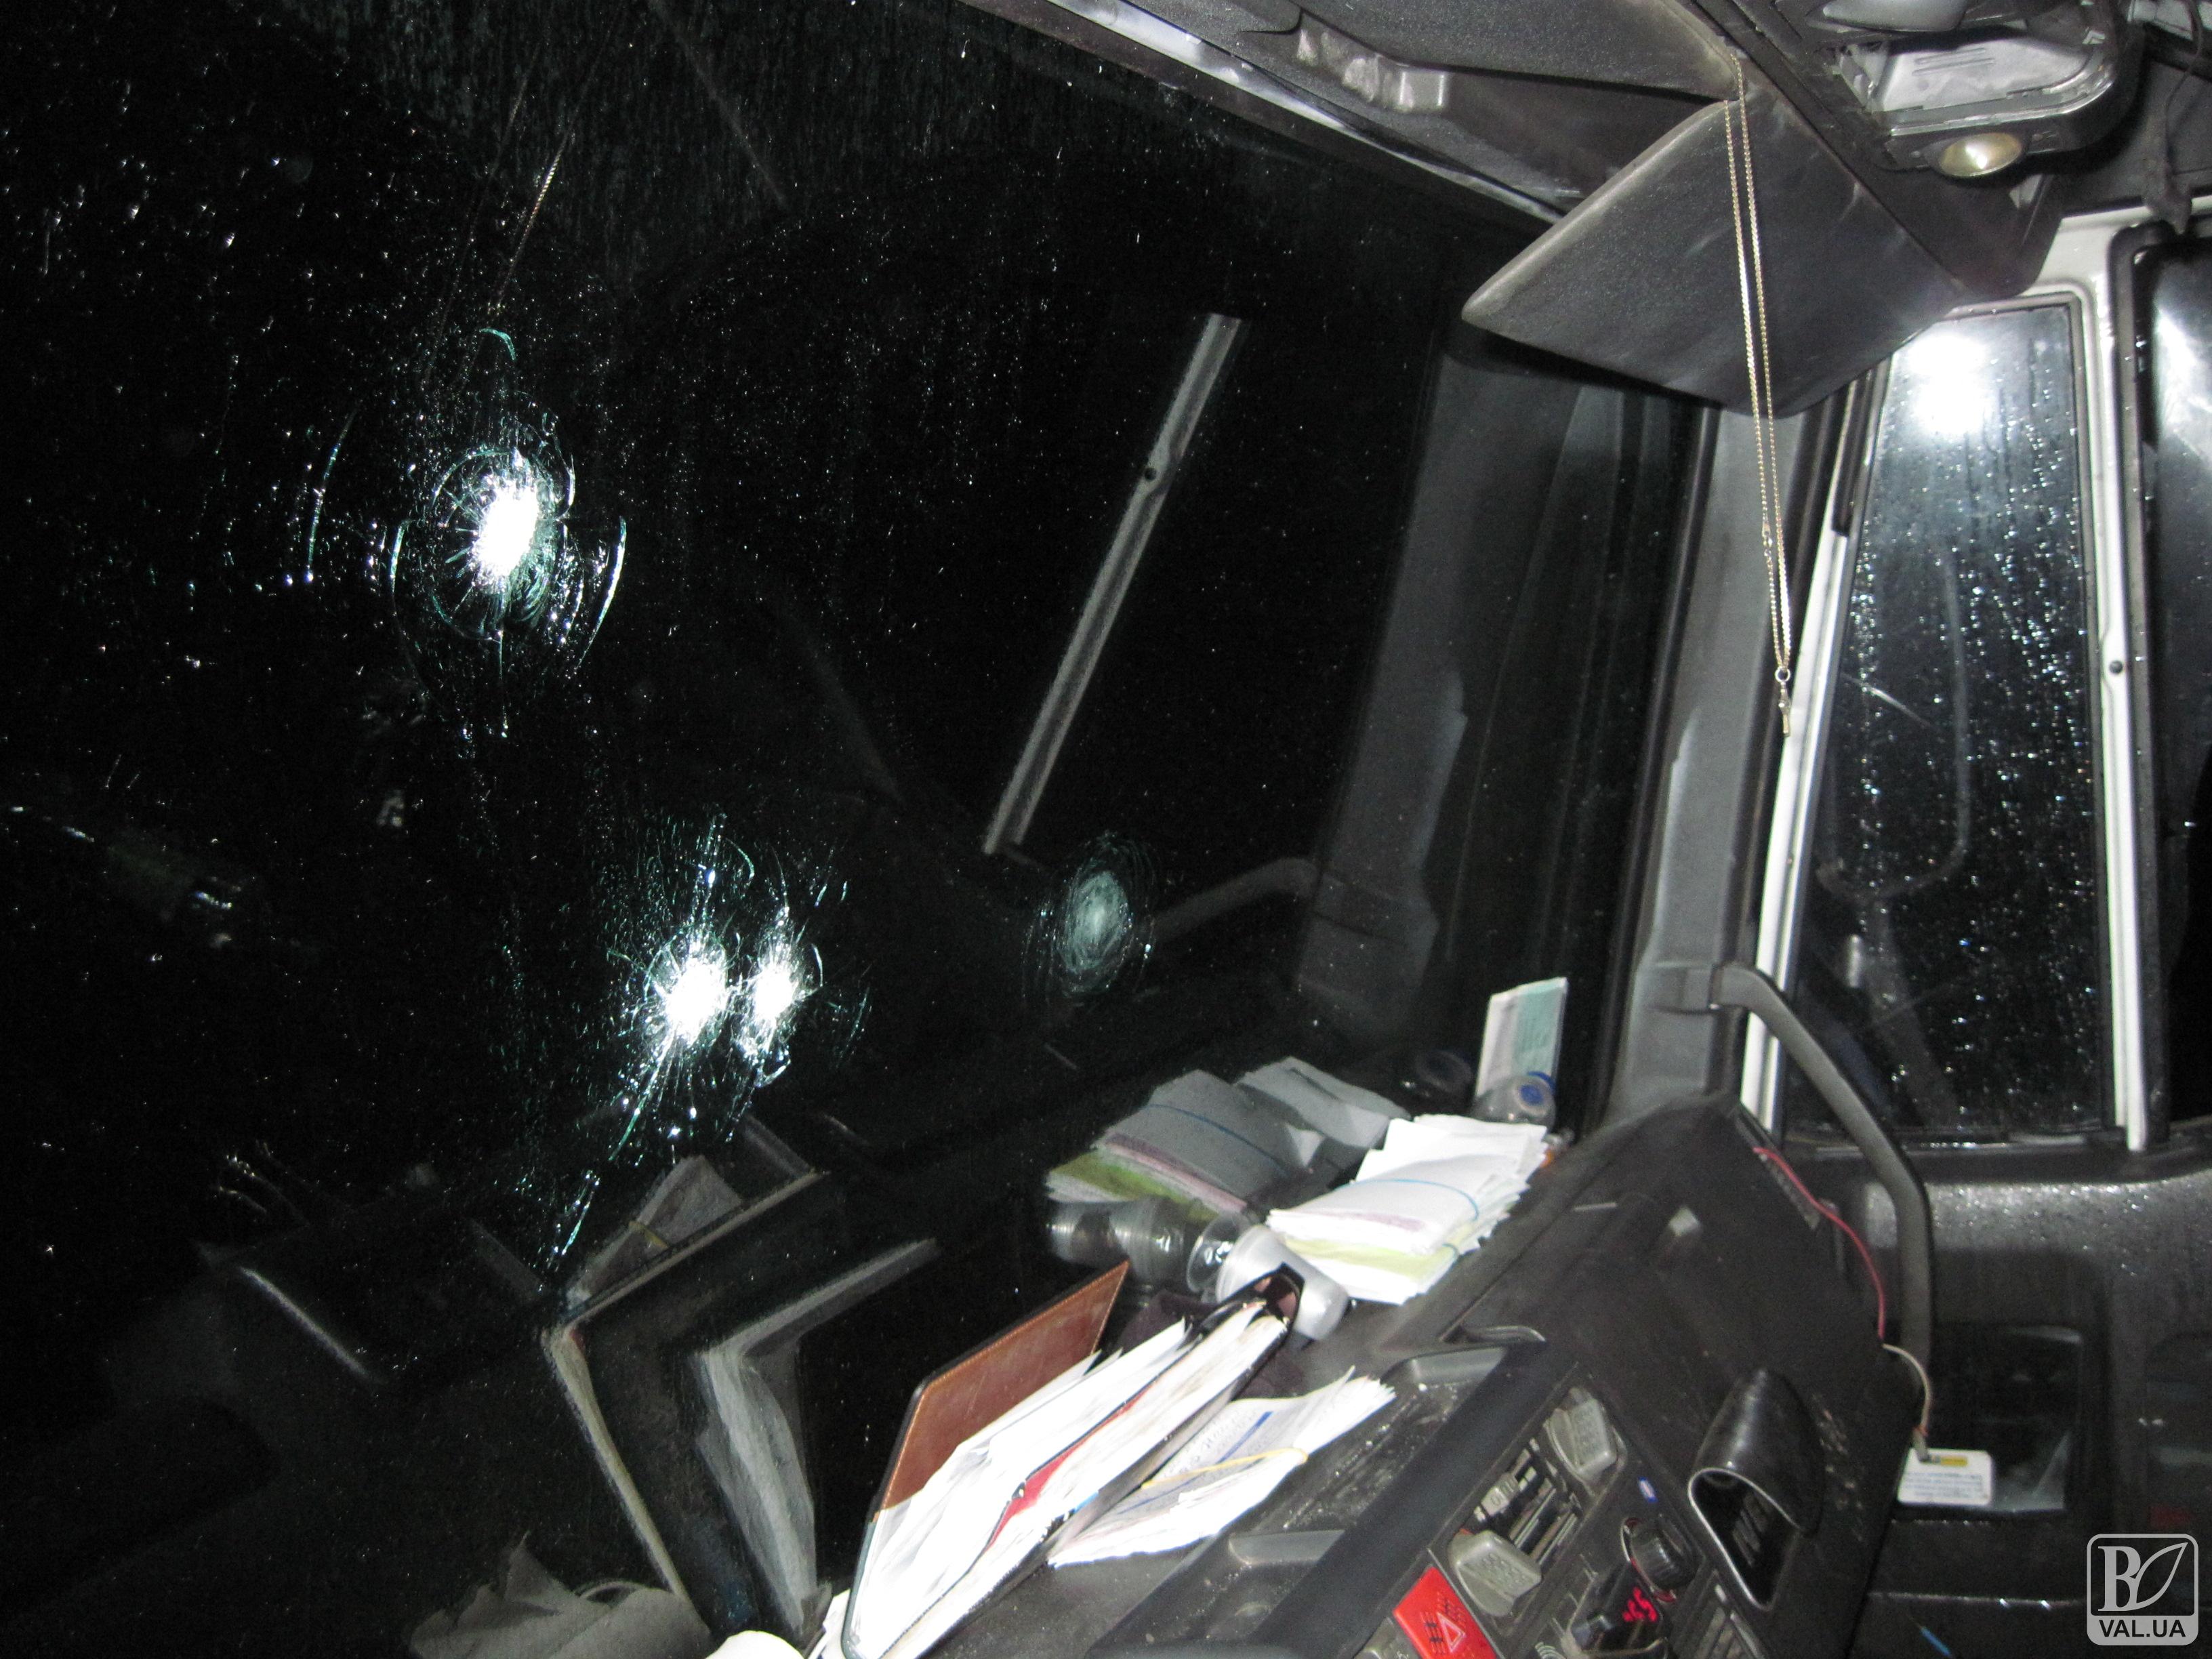 Гоп-стоп на Киевской трассе: четверо в масках обстреляли грузовик и забрали сейф с деньгами. ФОТО